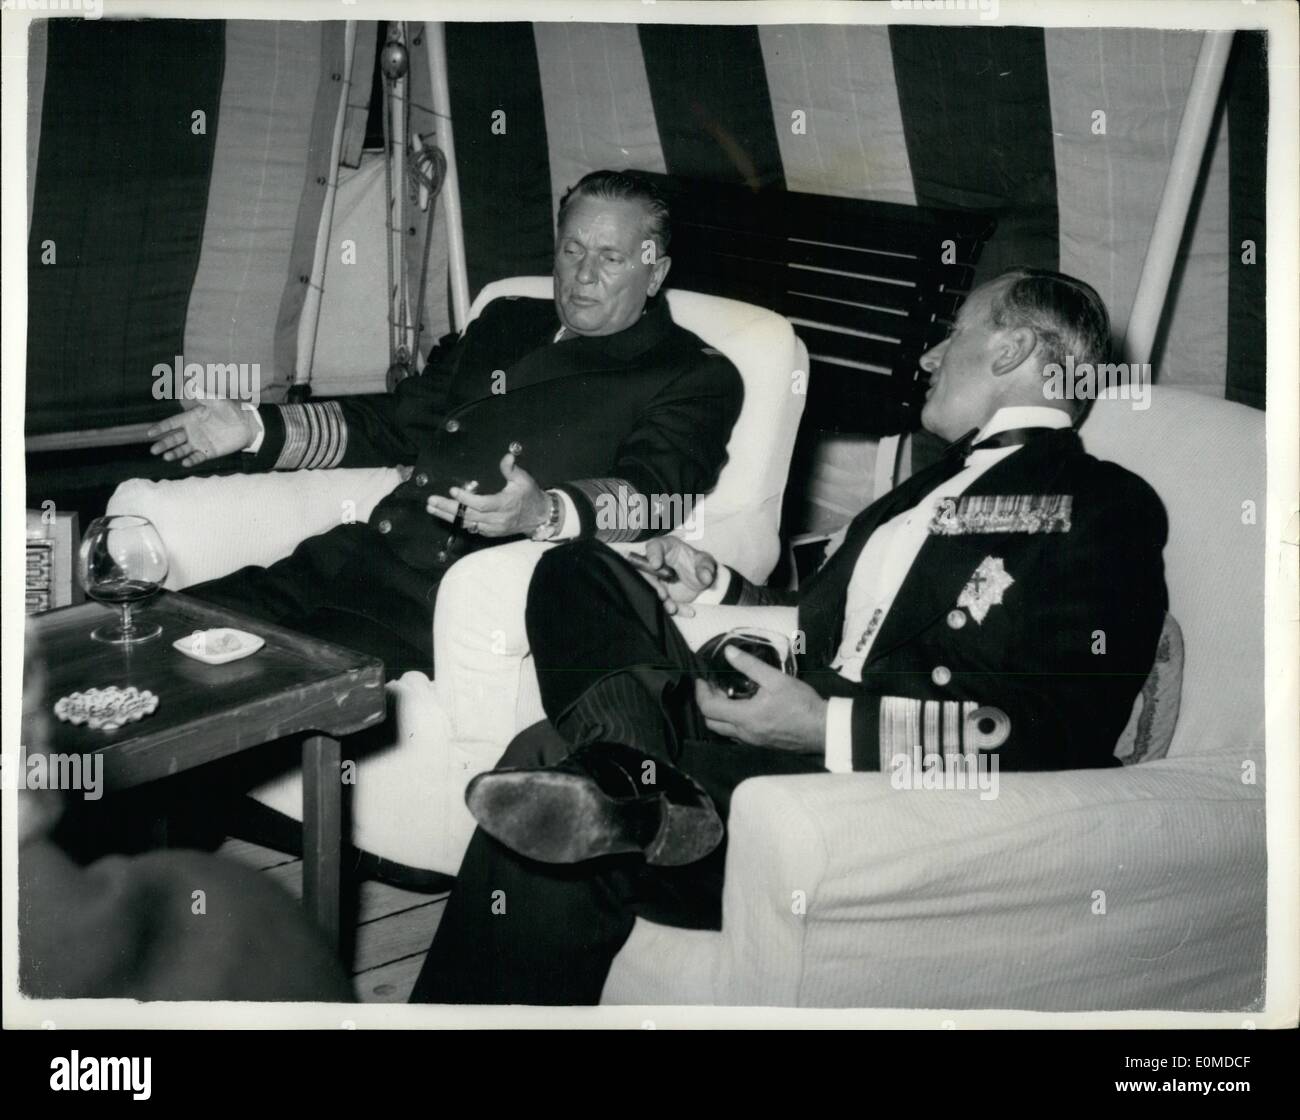 10. Oktober 1954 - Admiral Mountbatten Abschied von Präsident Tito: Admiral Graf Mounbatten von Buran K.G, K.C.B., G.C.V.O., G.M.S.I., D.S.O, unter seiner Flagge im Dispaton Behälter Überraschung, kam aus der Insel Brioni, Yugaslavia, vor kurzem. Nach dem Brand eines persönlichen Gruß an Präsident Tito auf der Nordseite der Insel in Sichtweite des Haus des Präsidenten, HMS Surprise sind Horde aus dem Hafen auf der Südseite der Insel. Admiral Mountbatten war ein Abschied fordert Präsident Tito vor Relinguishing sein Kommando über das Mittelmeer Flest noch in diesem Jahr die Zahlung Stockfoto